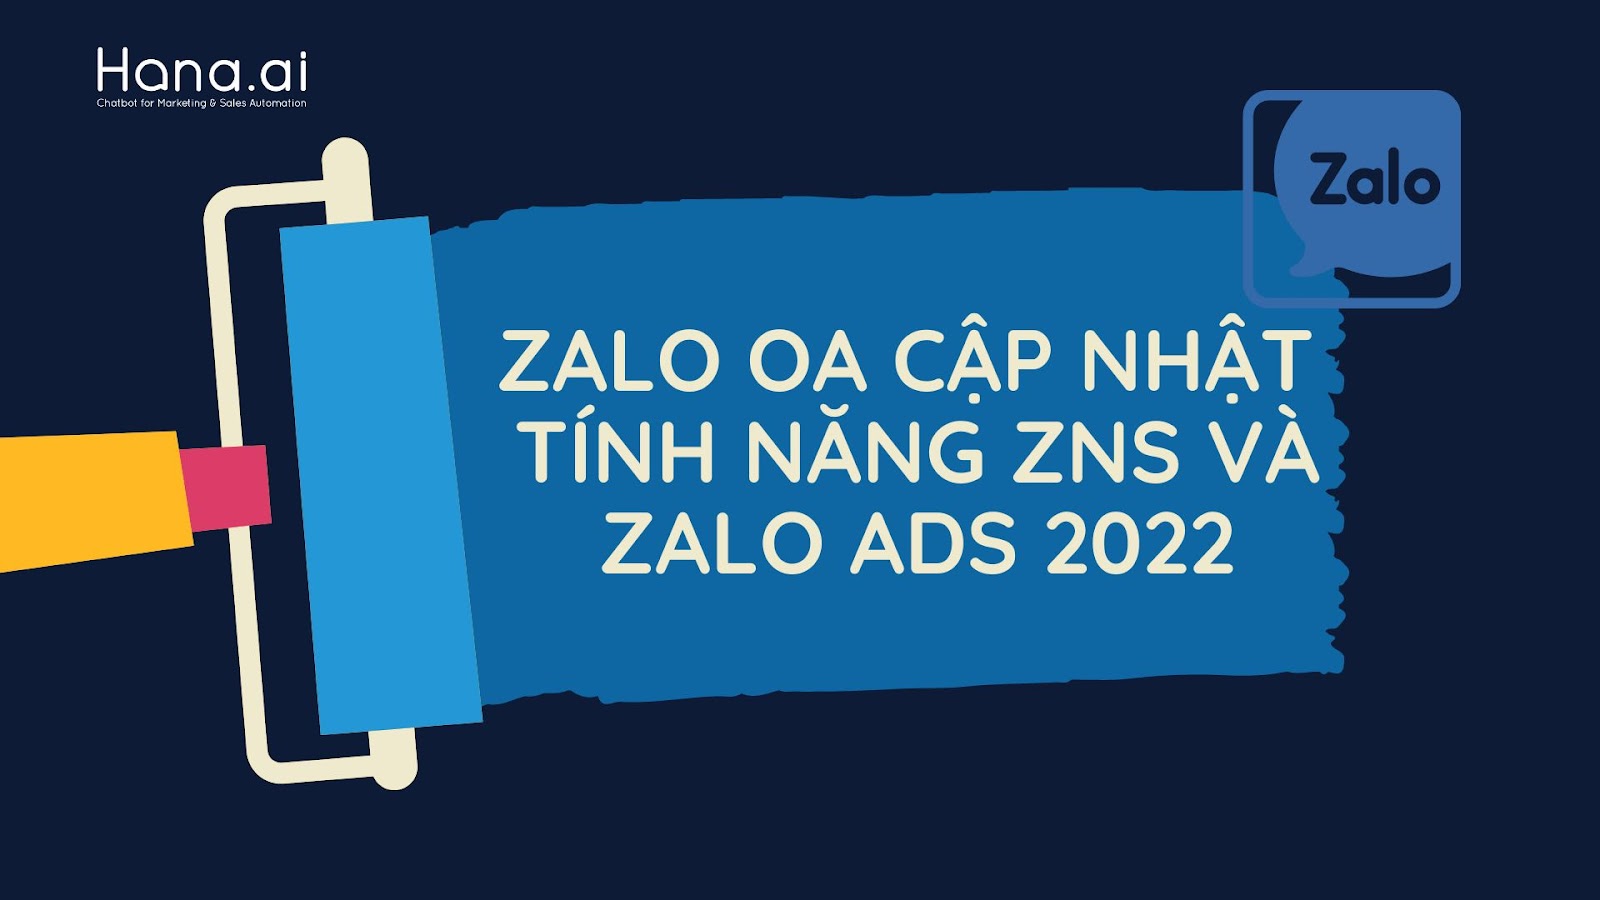 ZALO OA CẬP NHẬT TÍNH NĂNG ZNS VÀ ZALO ADS 2022